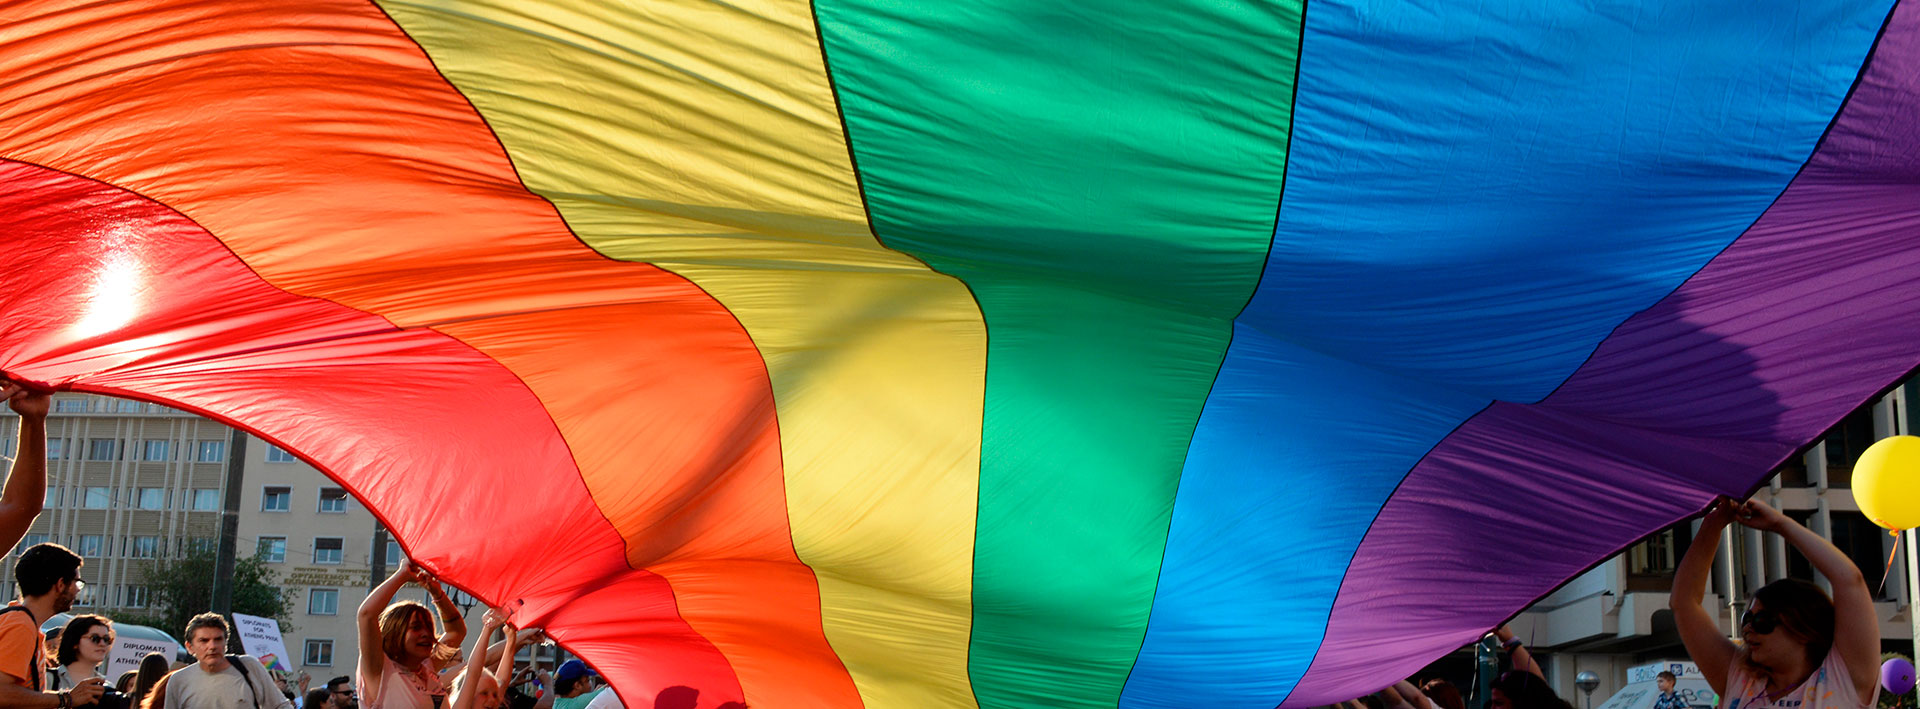 Bandera multicolor sostenida por un grupo de personas, representa a la comunidad LGTBIQ